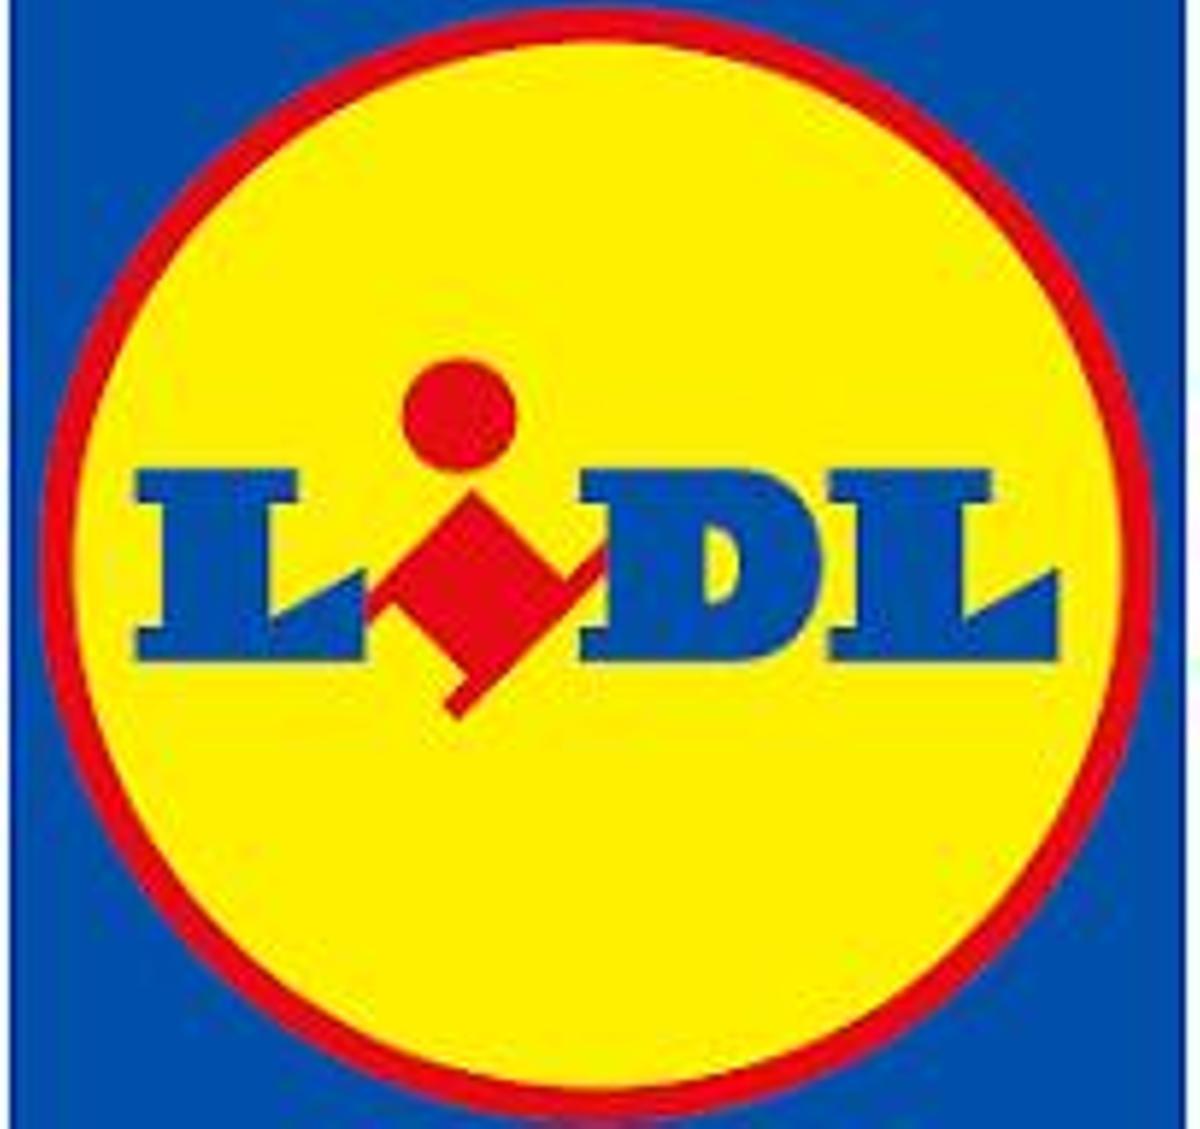 Das Logo von Lidl.